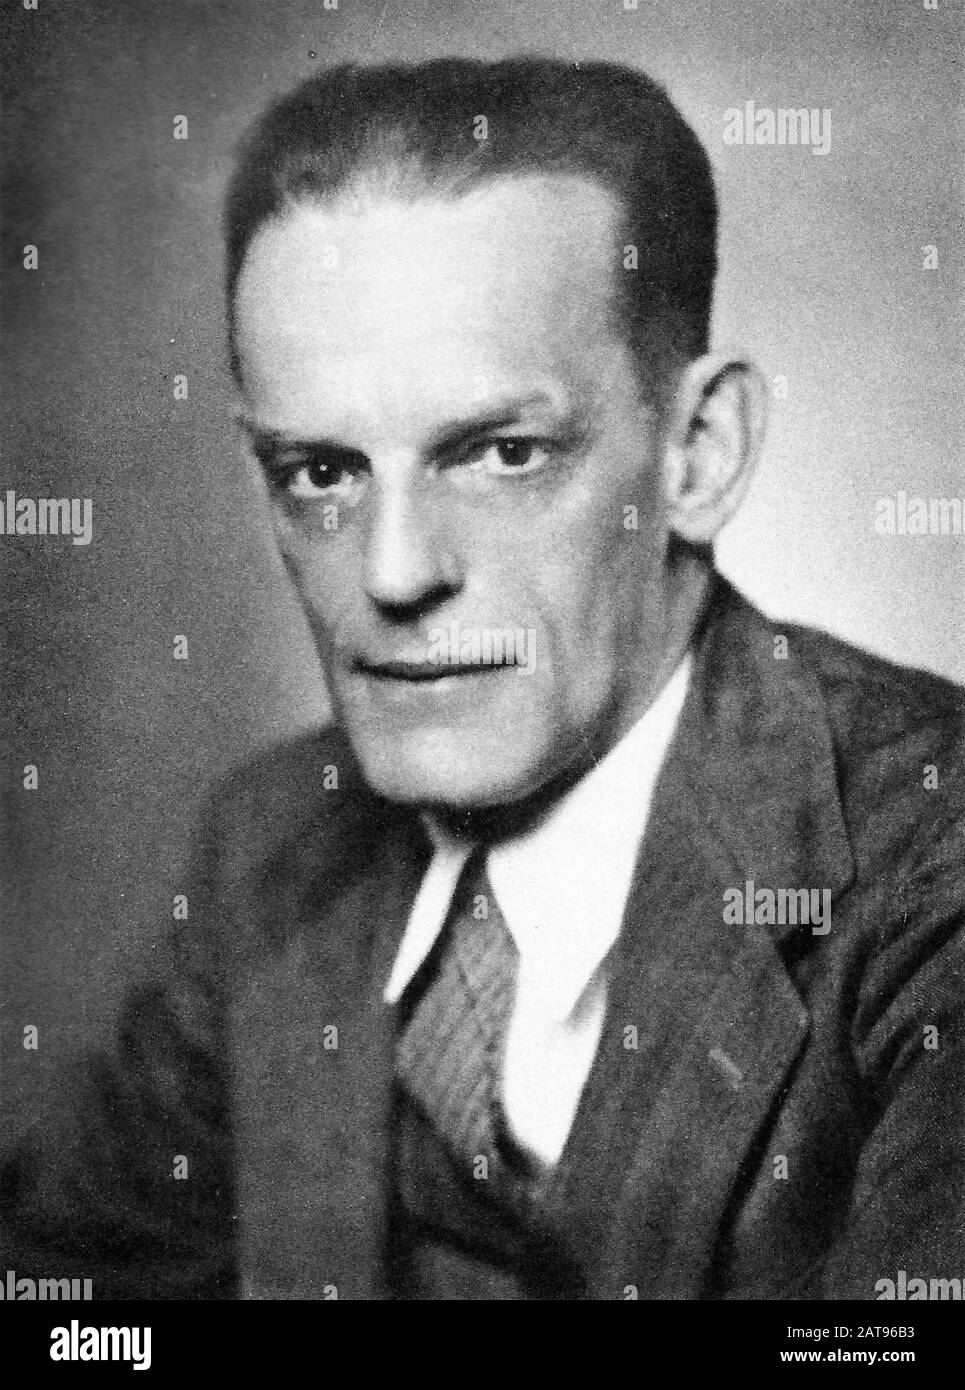 Max THEILER (1899-1972) virologue et médecin sud-africain qui a développé un vaccin contre la fièvre jaune. Photo de 1951 l'année où il a reçu le prix Nobel de physiologie ou médecine Banque D'Images